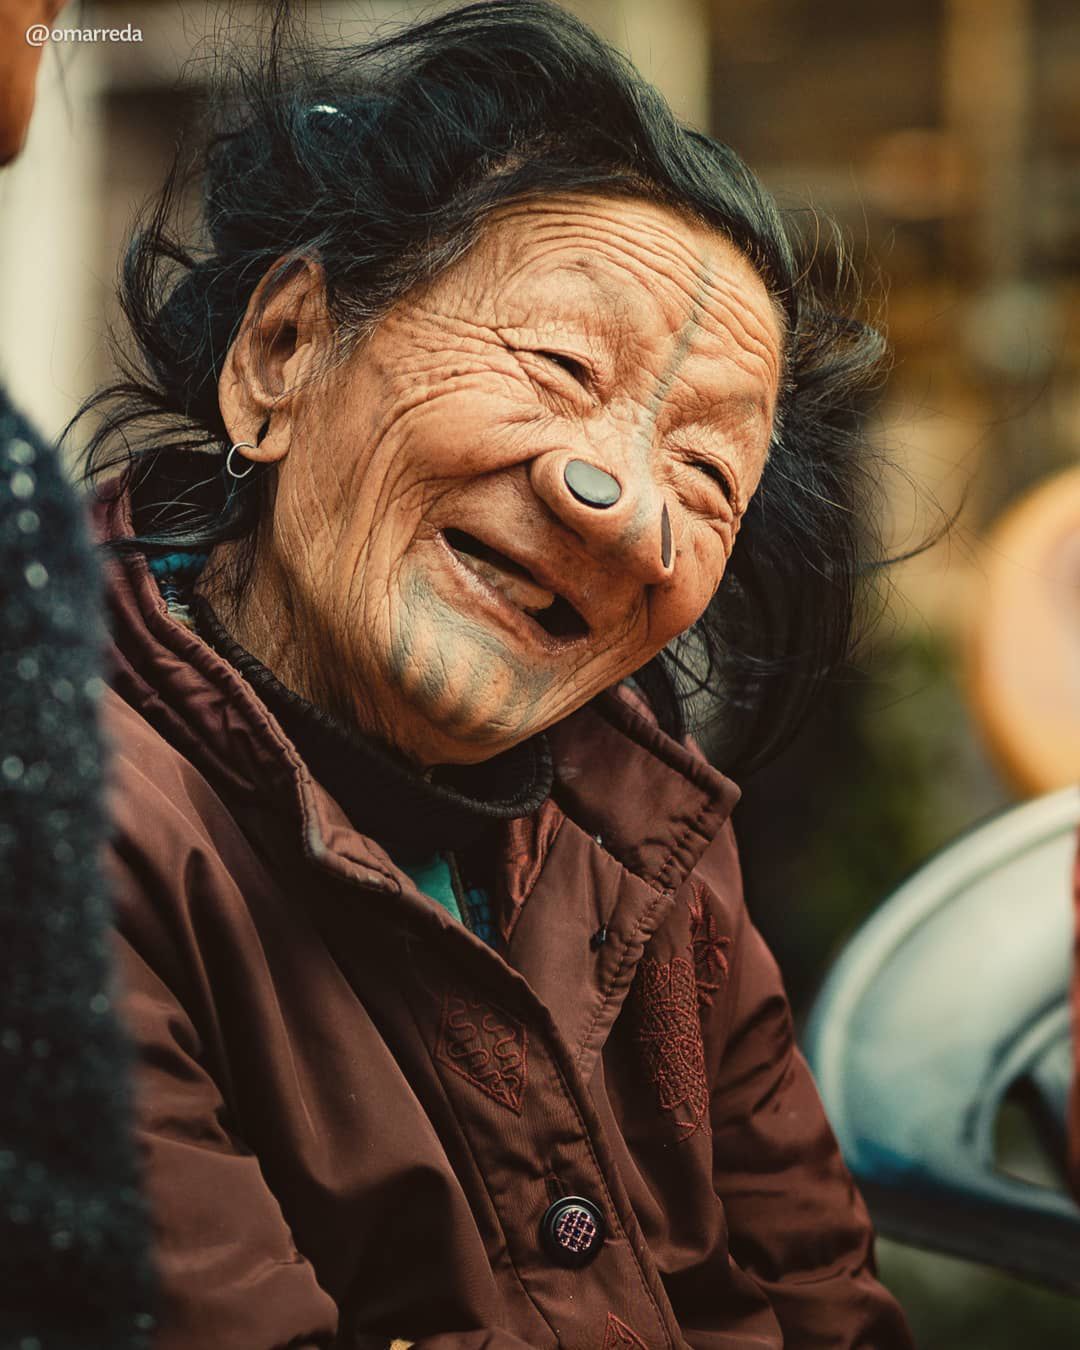 Zdjęcia najstarszych kobiet z plemienia Apatani pokazują ich radość życia